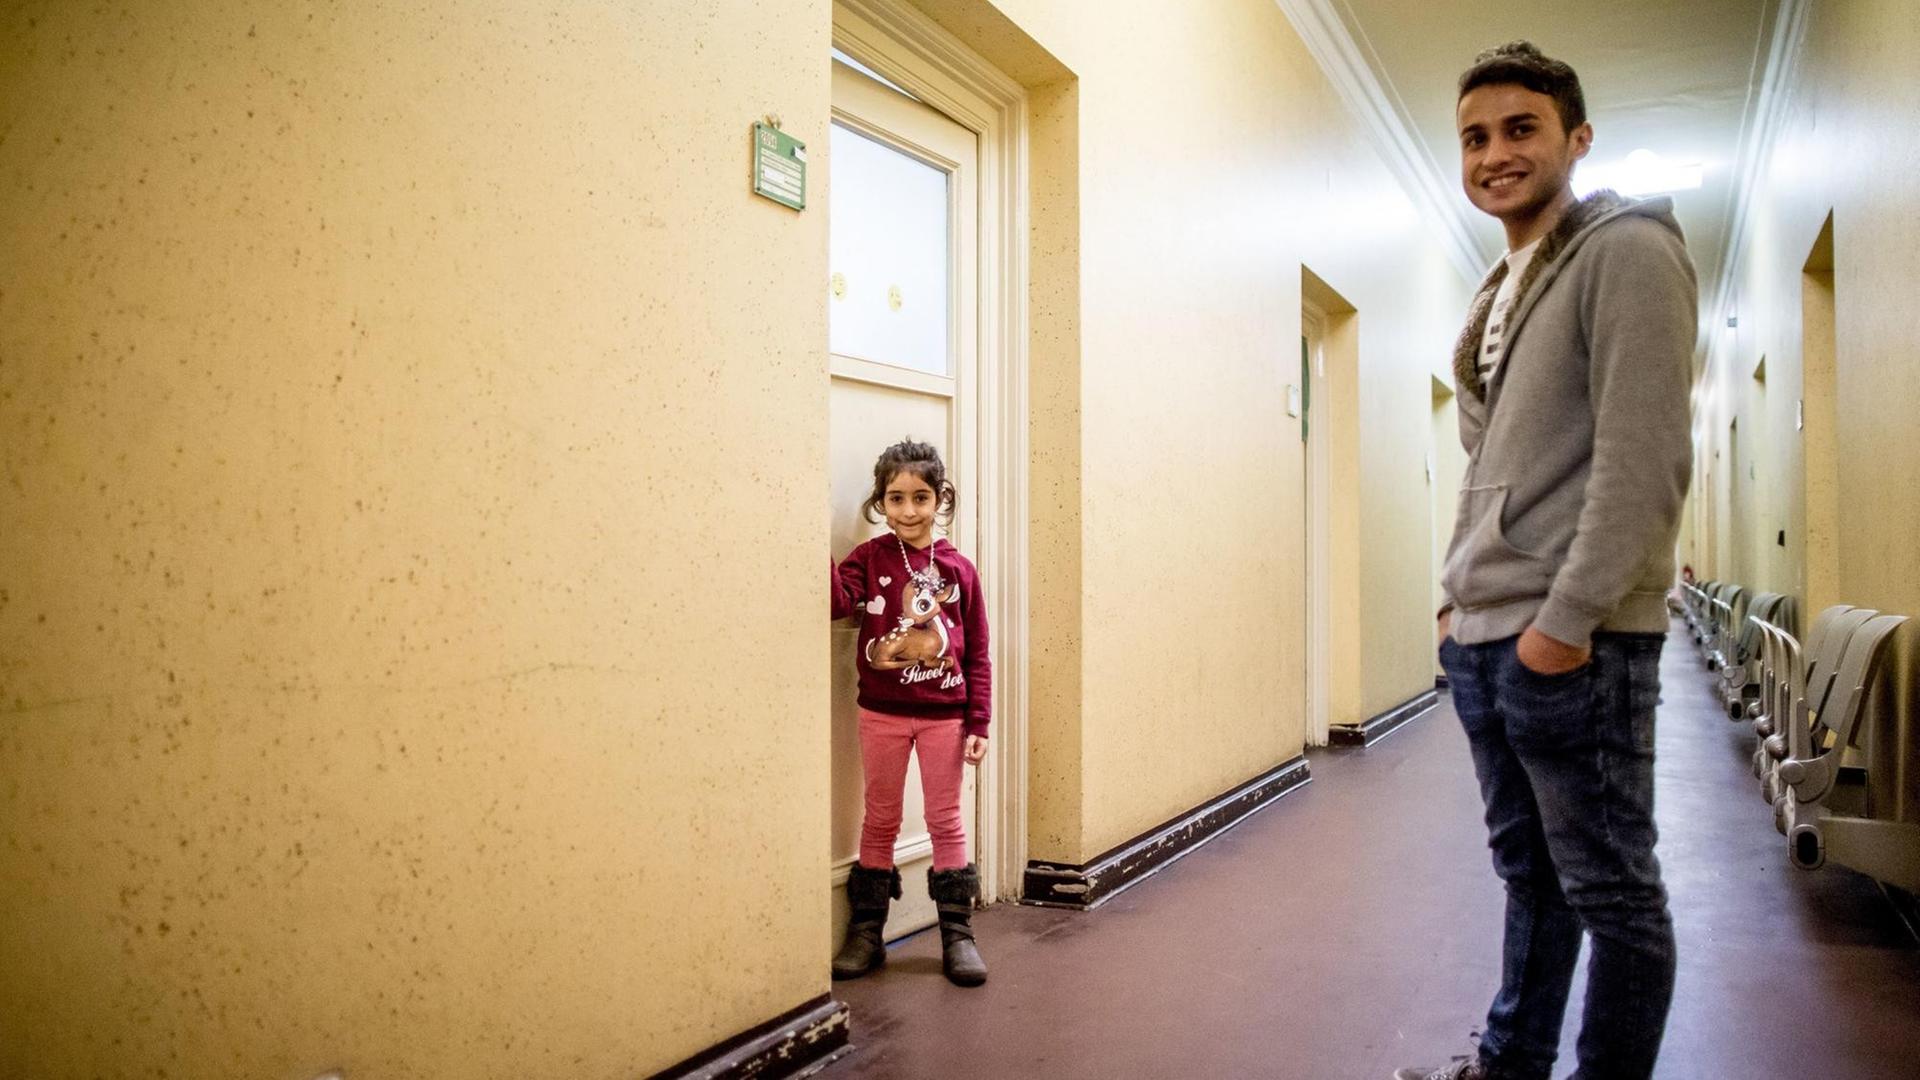 Farbfoto von zwei Personen, die in einem Hausflur stehen und in die Kamera lächeln. Es sind ein kleines ca. siebenjähriges Mädchen und ihr erwachsener Bruder, Flüchtlinge aus Syrien.